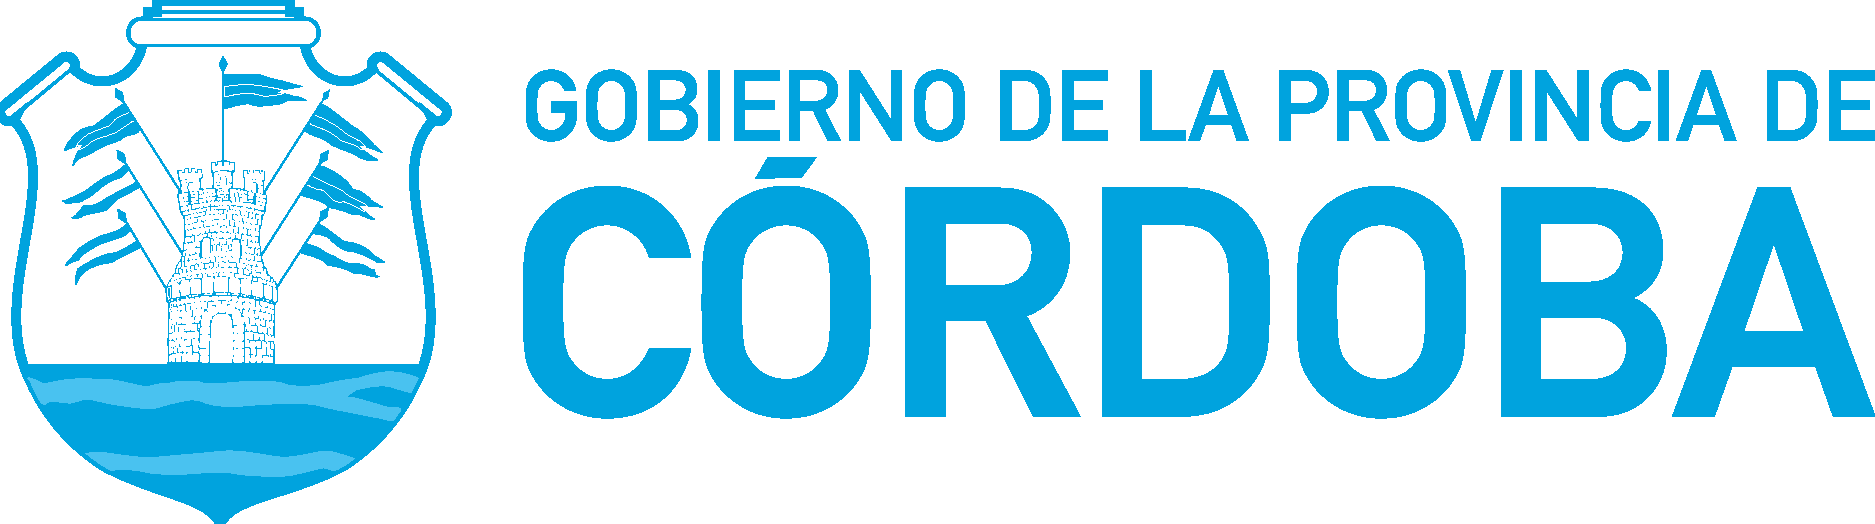 Gobierno De La Provincia De Cordoba Logo Vector